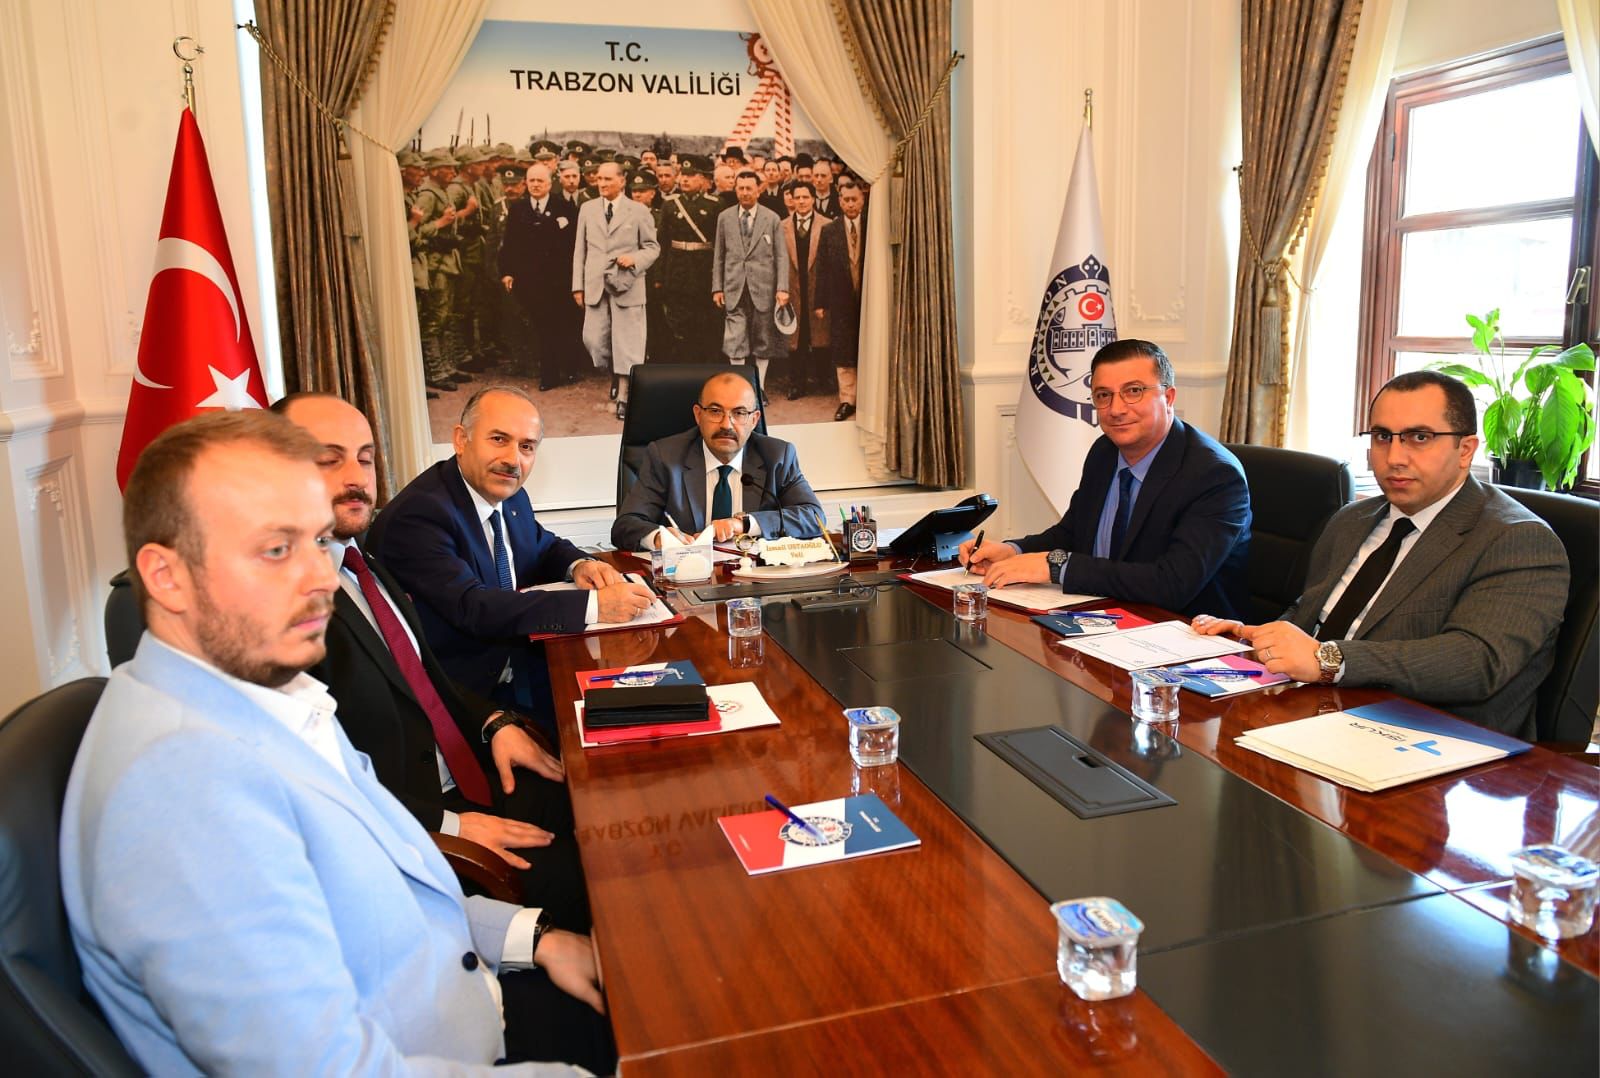 Trabzon Üniversitesi ile Çalışma ve İş Kurumu Müdürlüğü protokol imzaladı